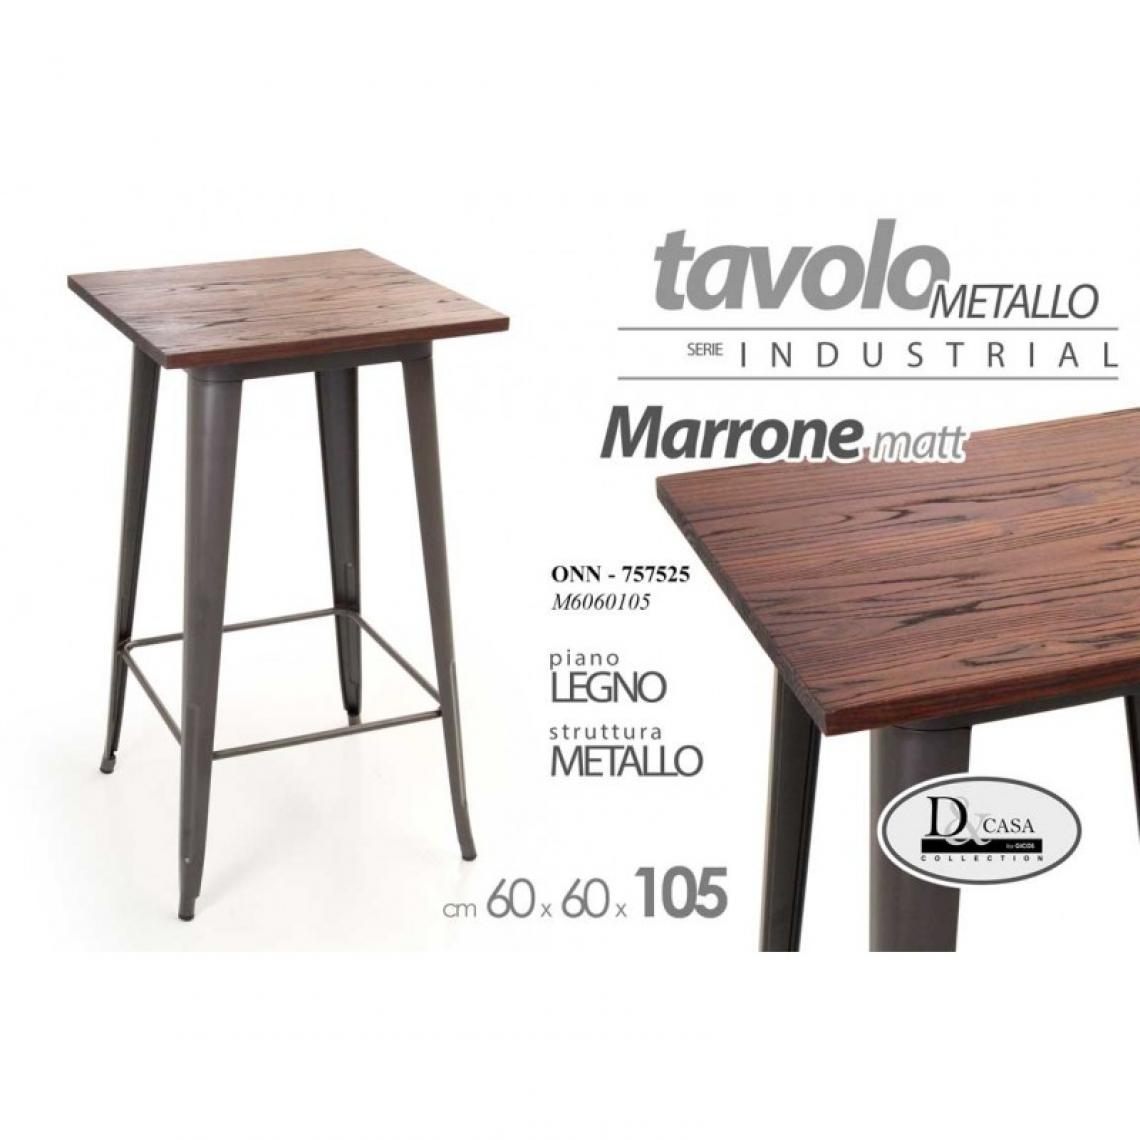 Webmarketpoint - Table carrée 60 x 60 cm en bois et métal marron - Tables à manger